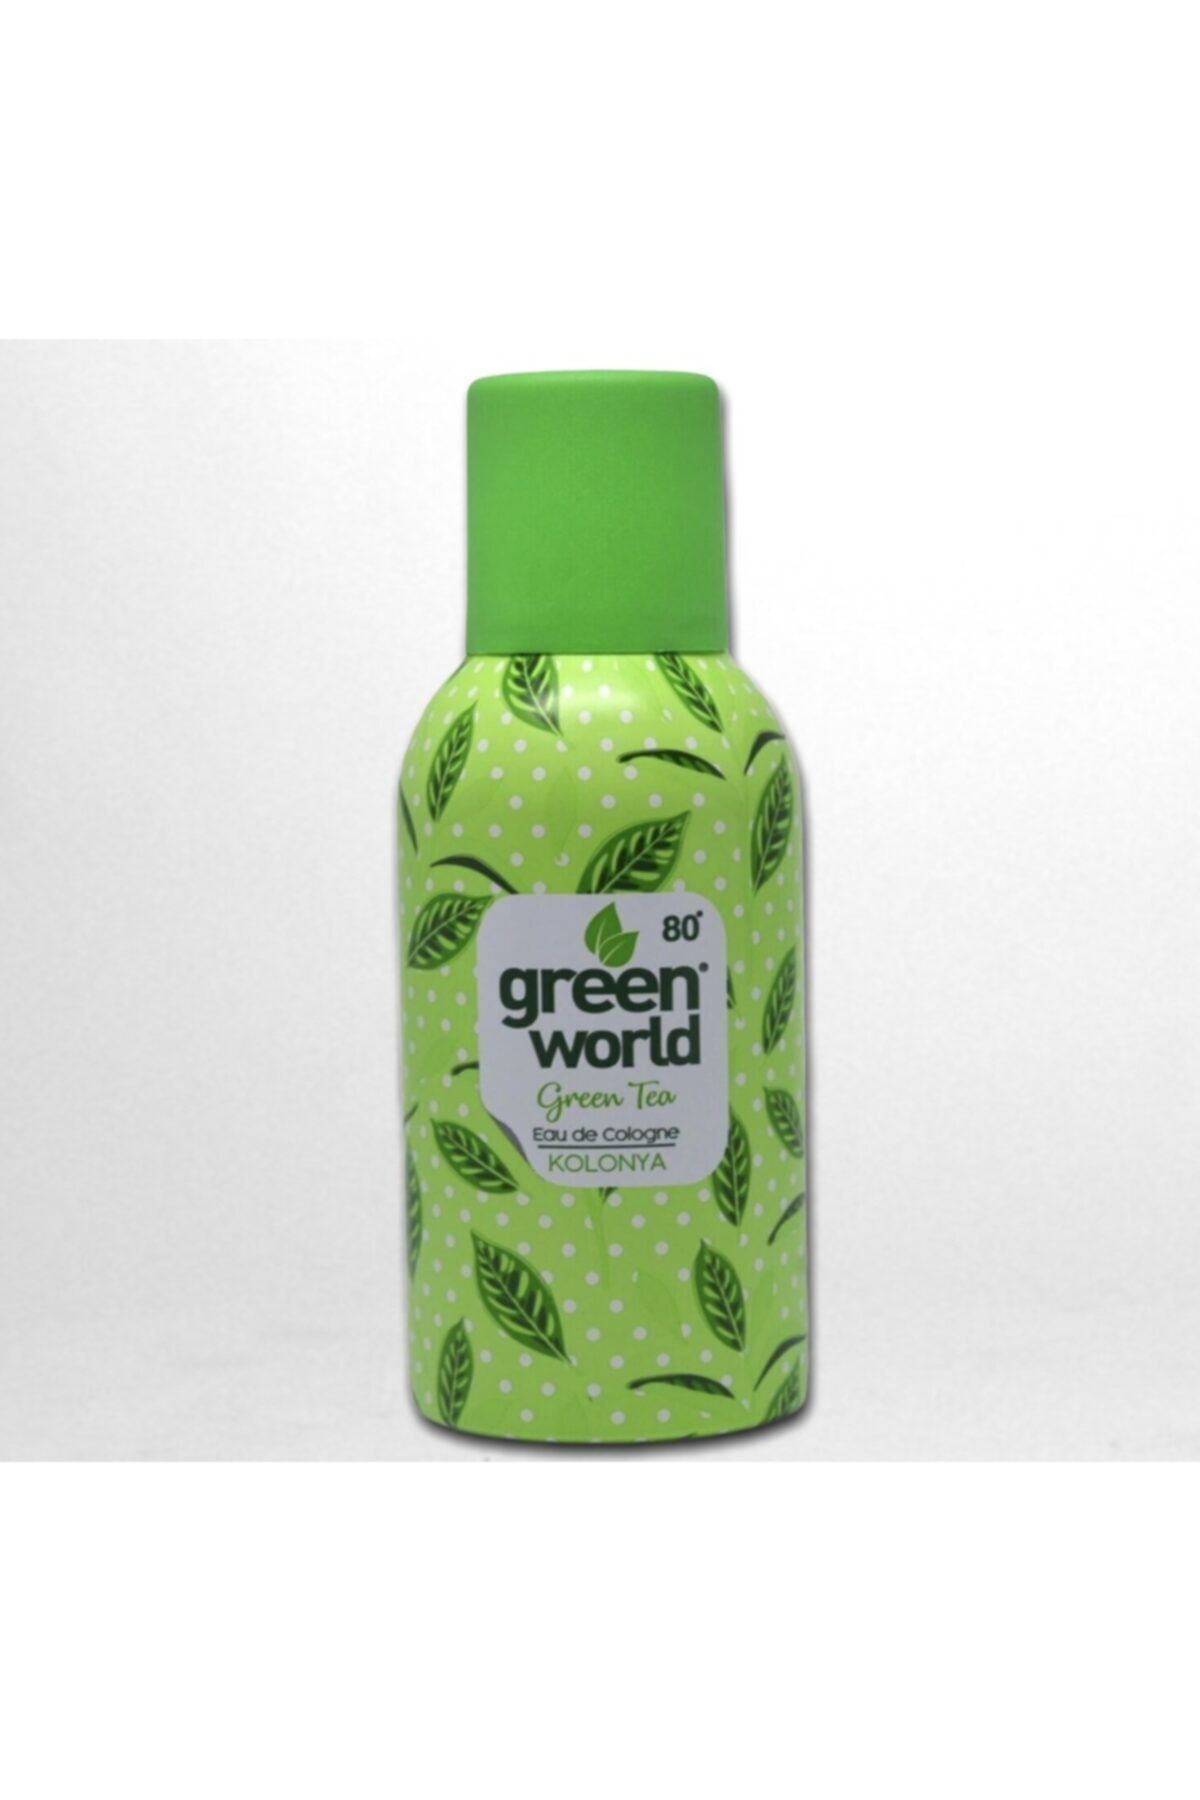 Green World Çelik Kozmetik Ankara Yeşil Çay Kolonyası Sprey 80 Derece 150 ml